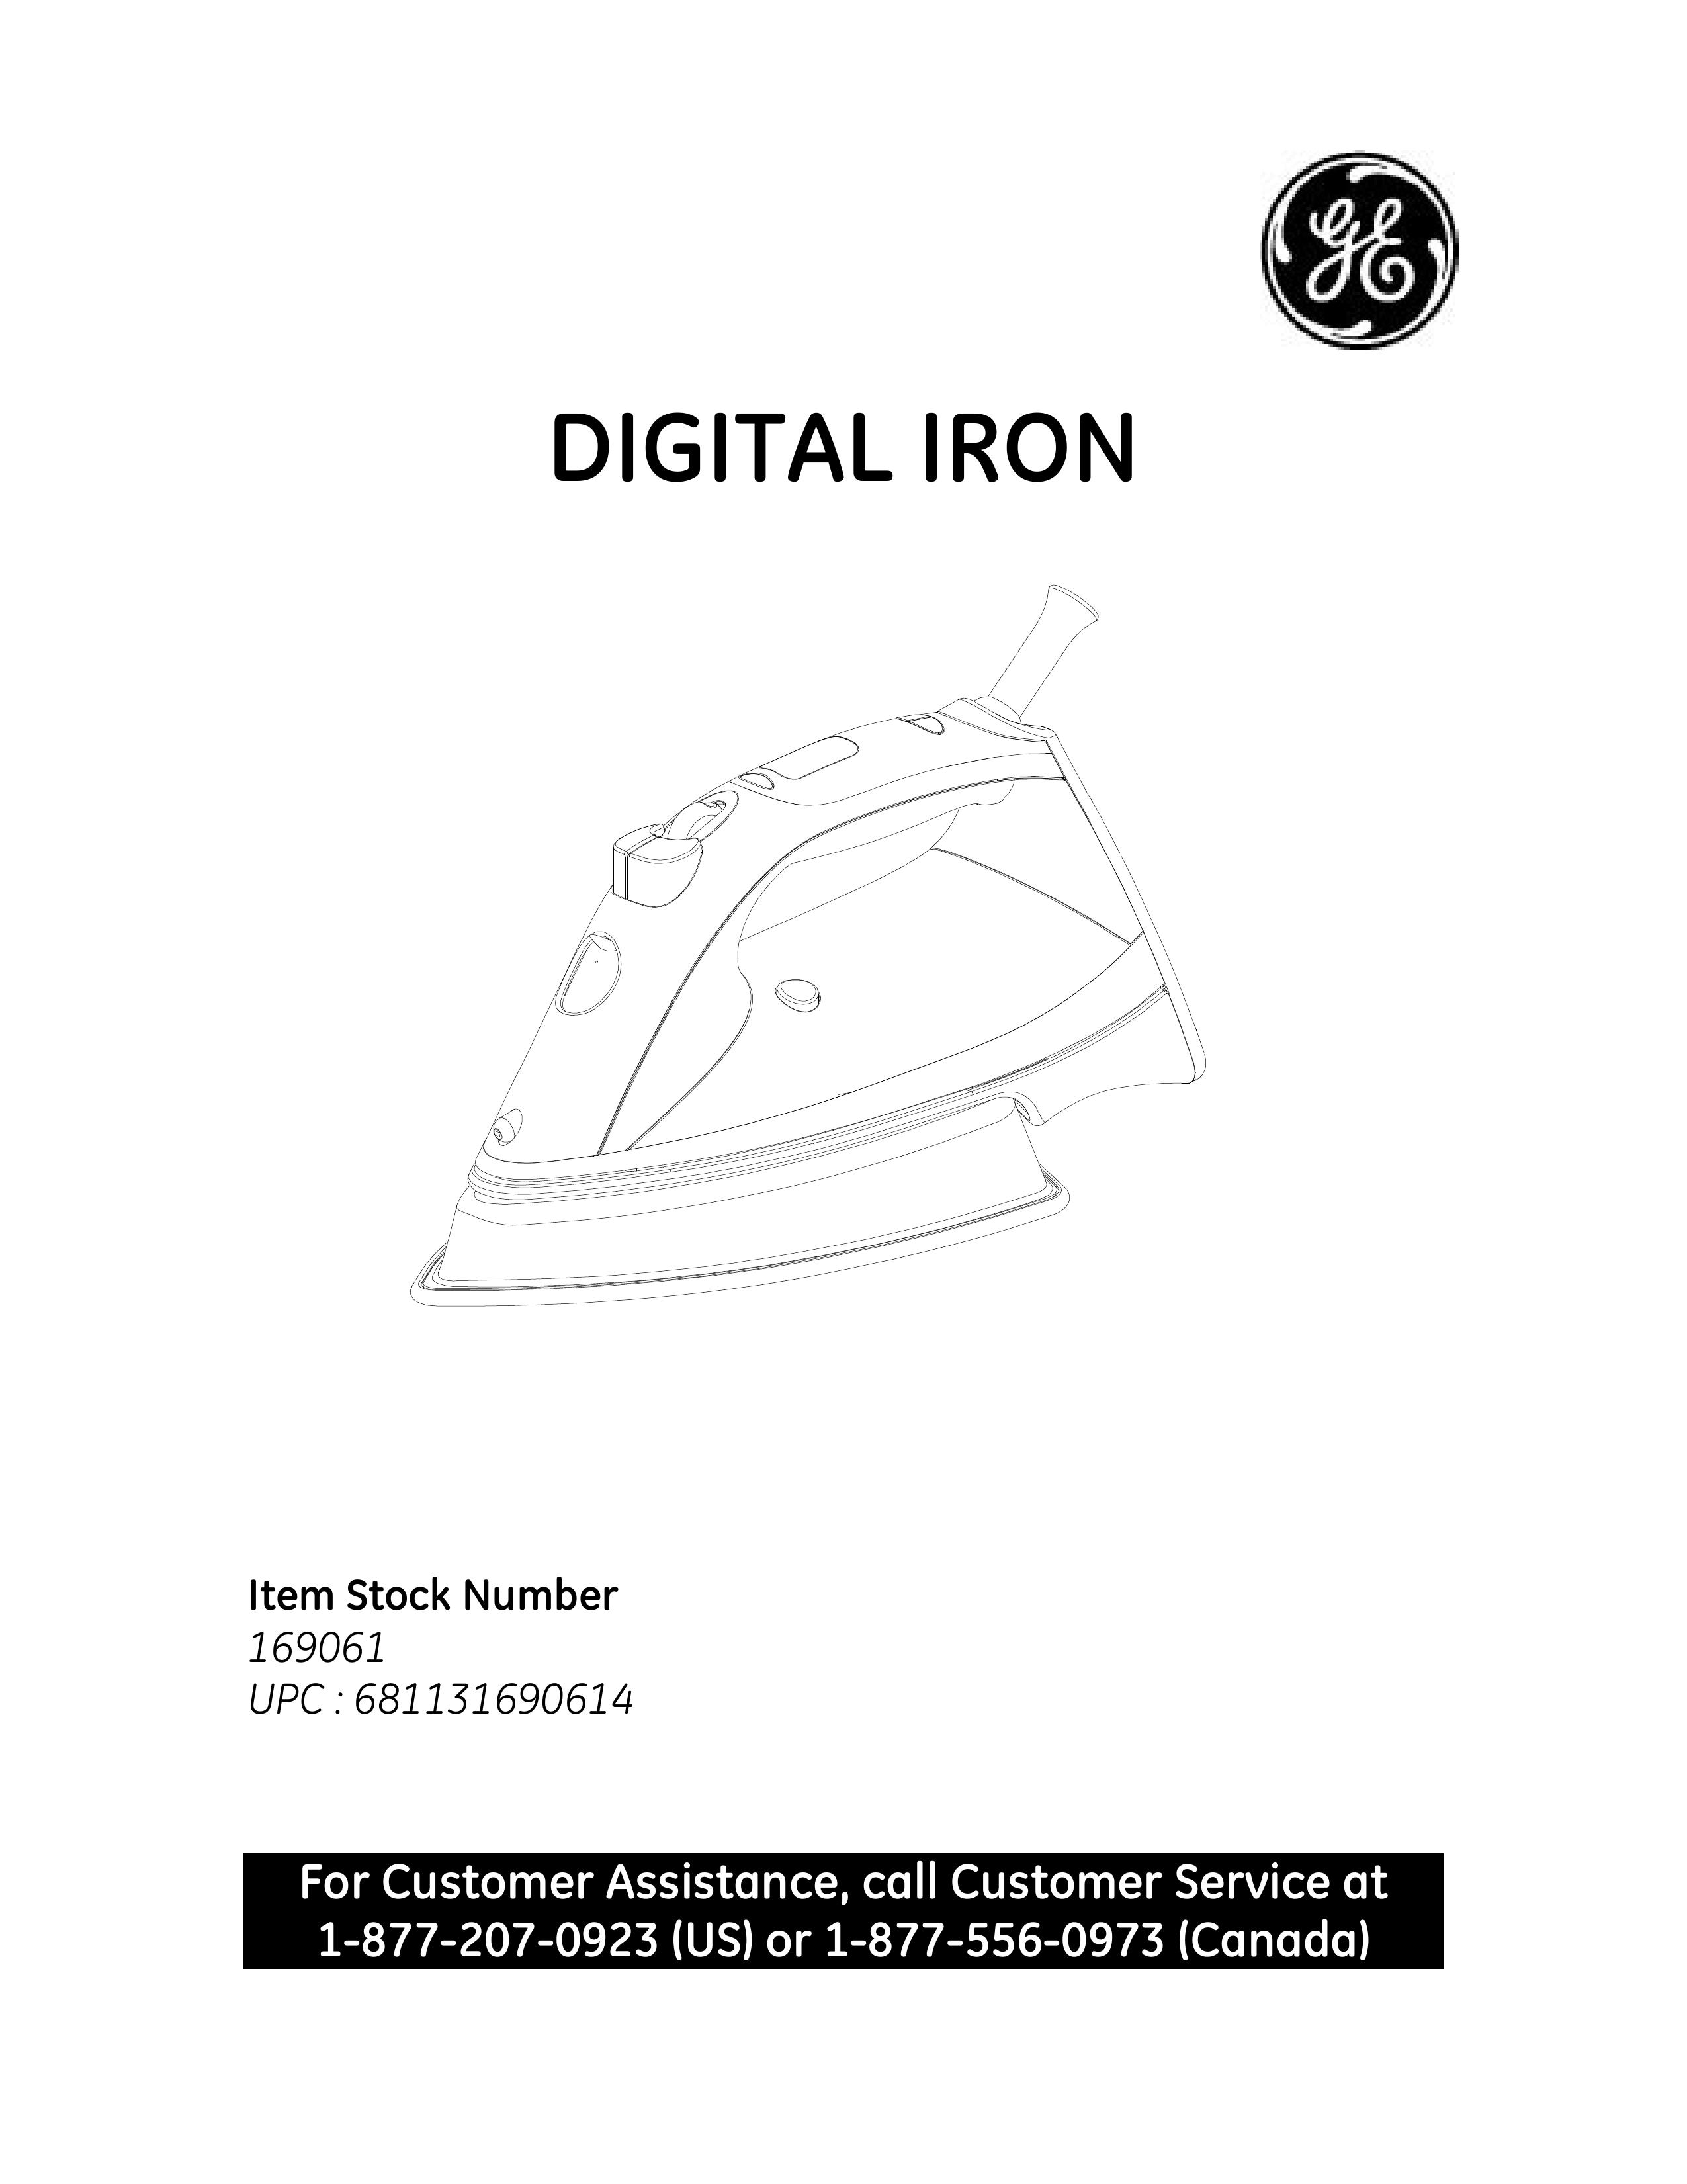 GE 681131690614 Iron User Manual